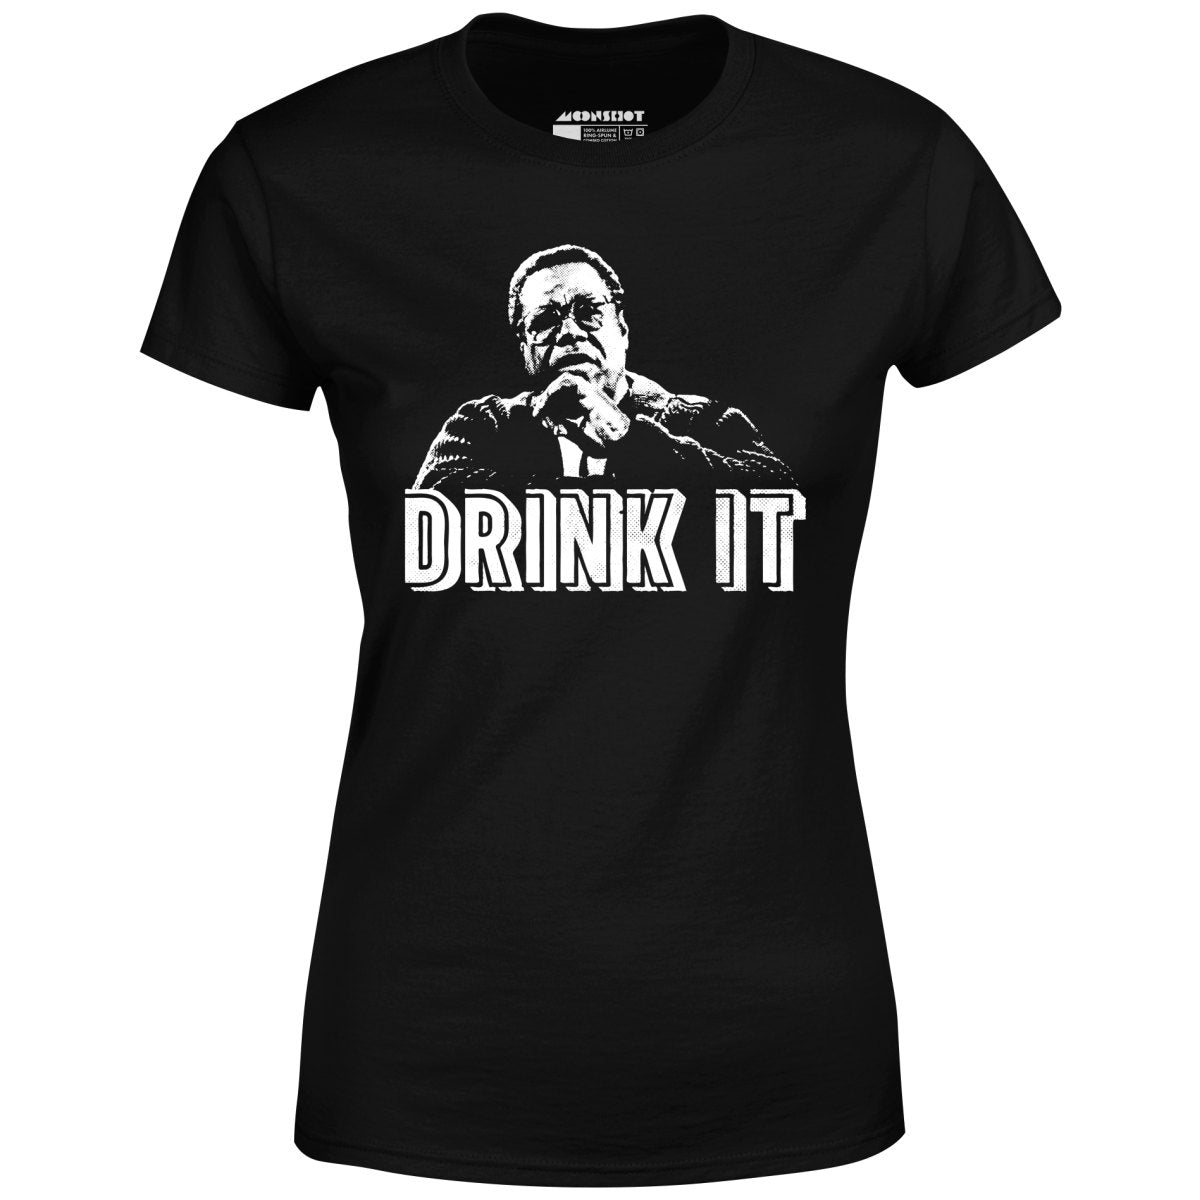 Drink It! - Women's T-Shirt